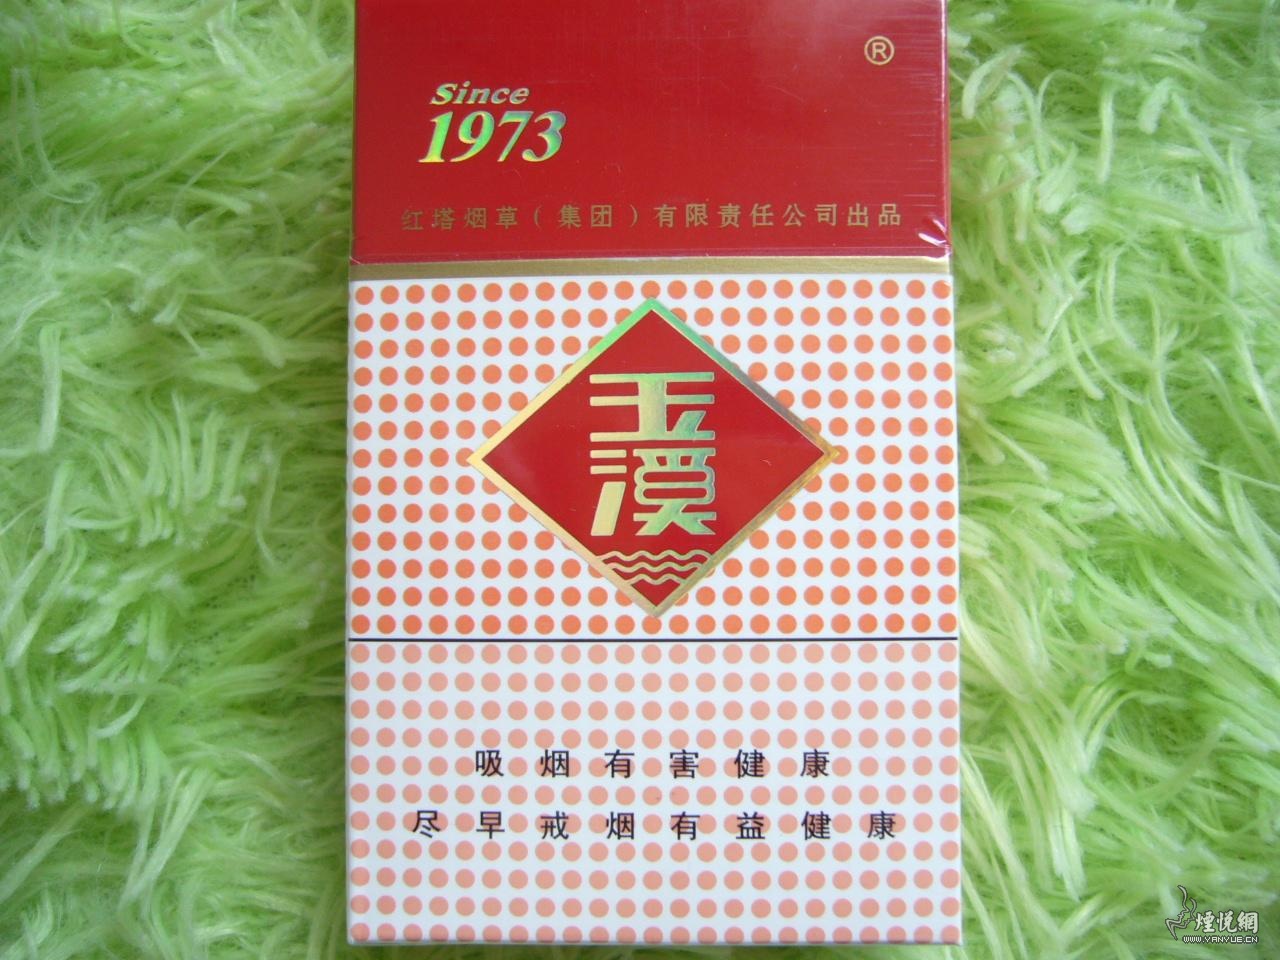 玉溪1973 - 香烟品鉴 - 烟悦网论坛